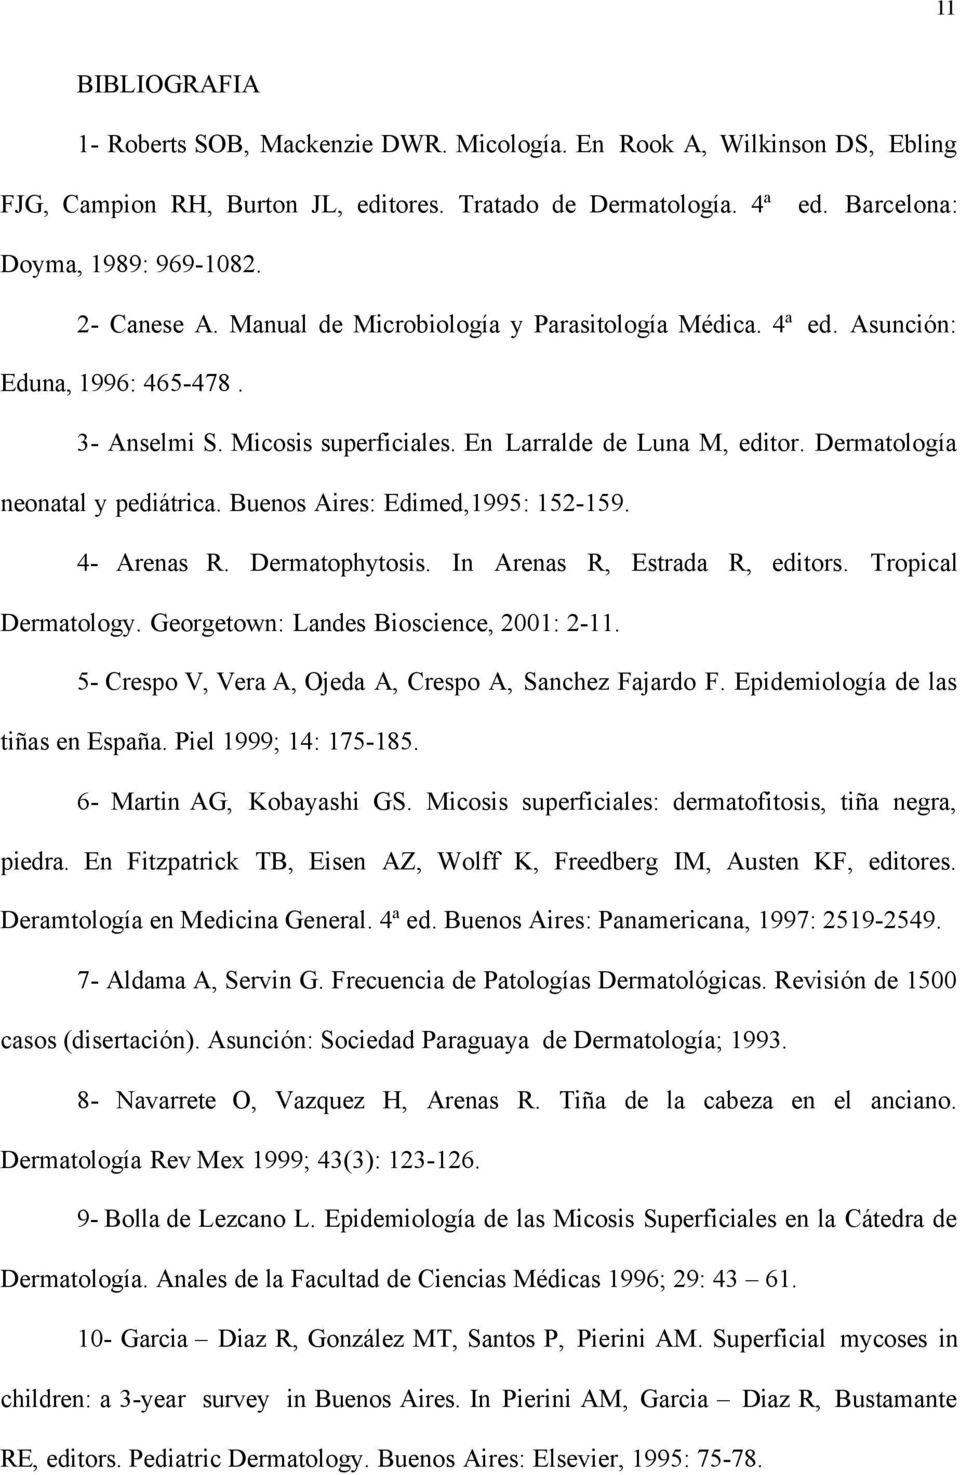 Dermatología neonatal y pediátrica. Buenos Aires: Edimed,1995: 152-159. 4- Arenas R. Dermatophytosis. In Arenas R, Estrada R, editors. Tropical Dermatology. Georgetown: Landes Bioscience, 2001: 2-11.